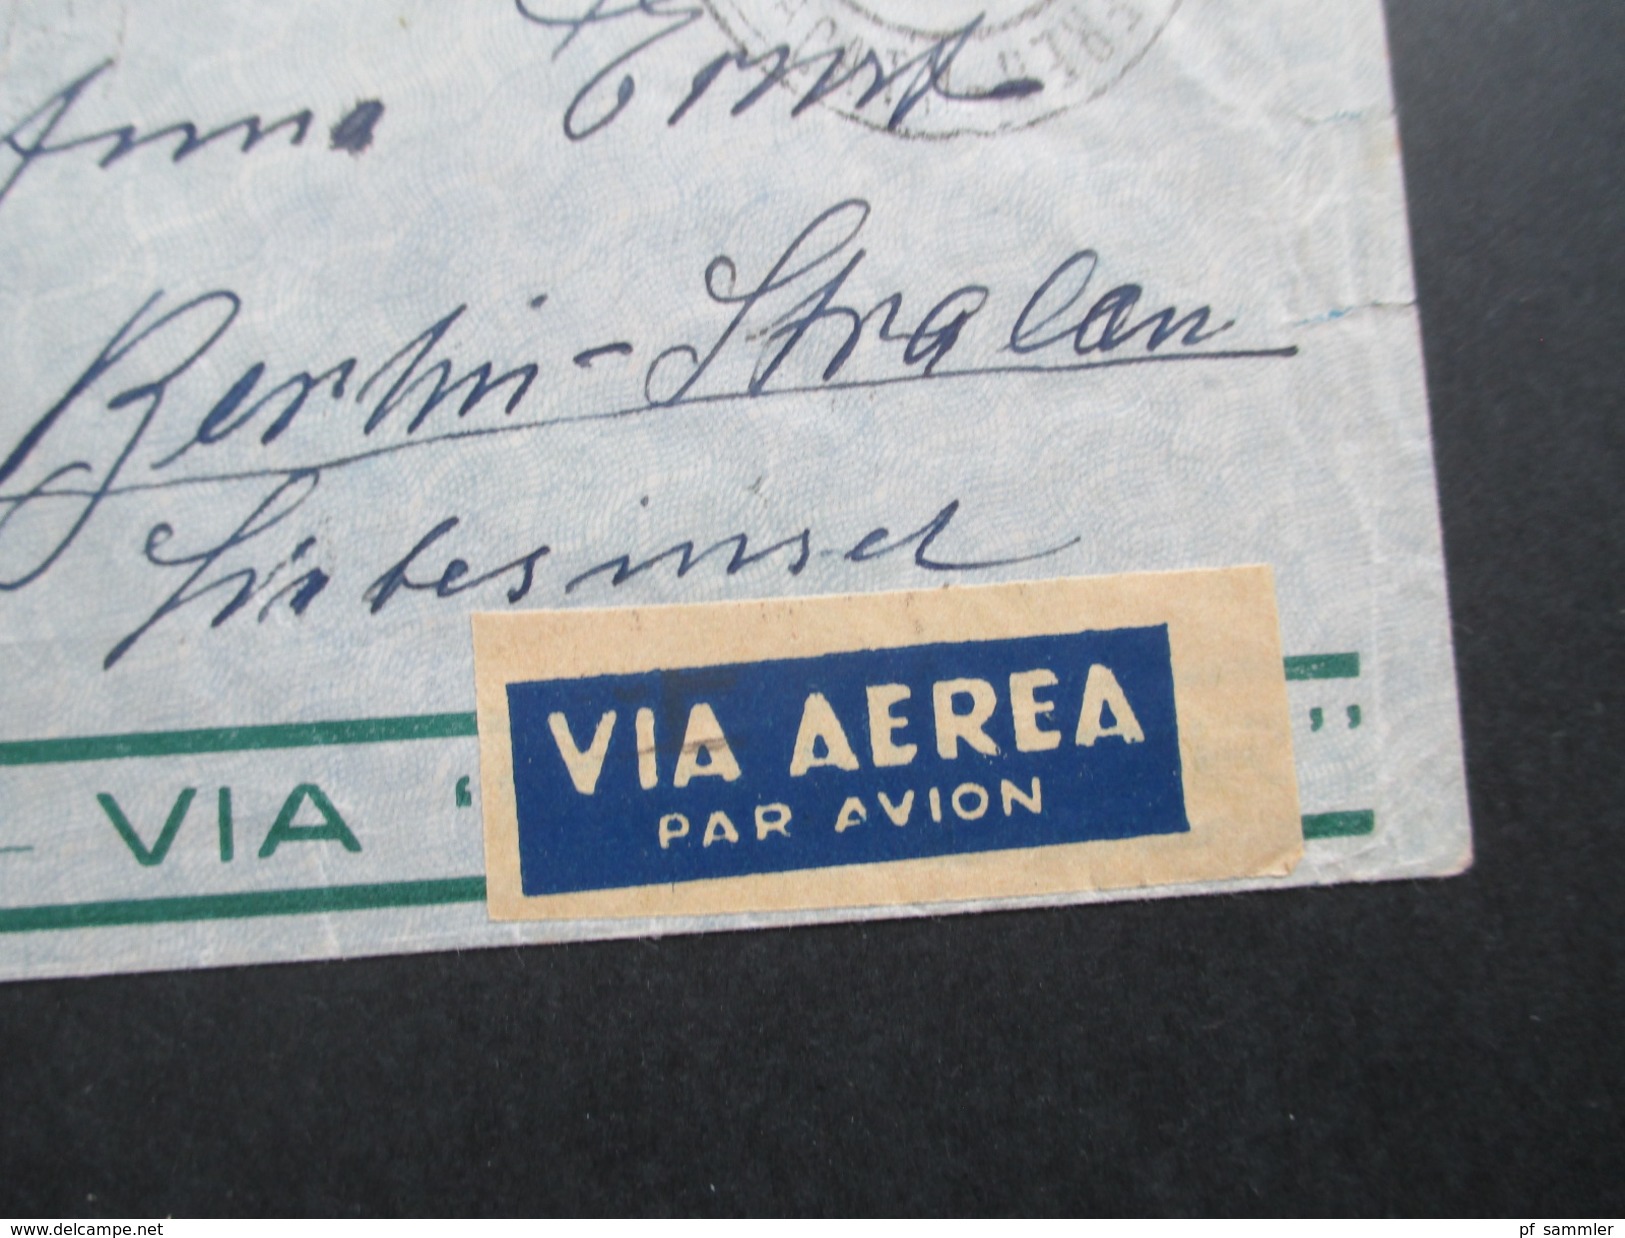 Brasilien 1935 Luftpost / Flugpost Via Condor. Nach Berlin über Paris R.P. Avion. Zeppelinpost?? - Lettres & Documents